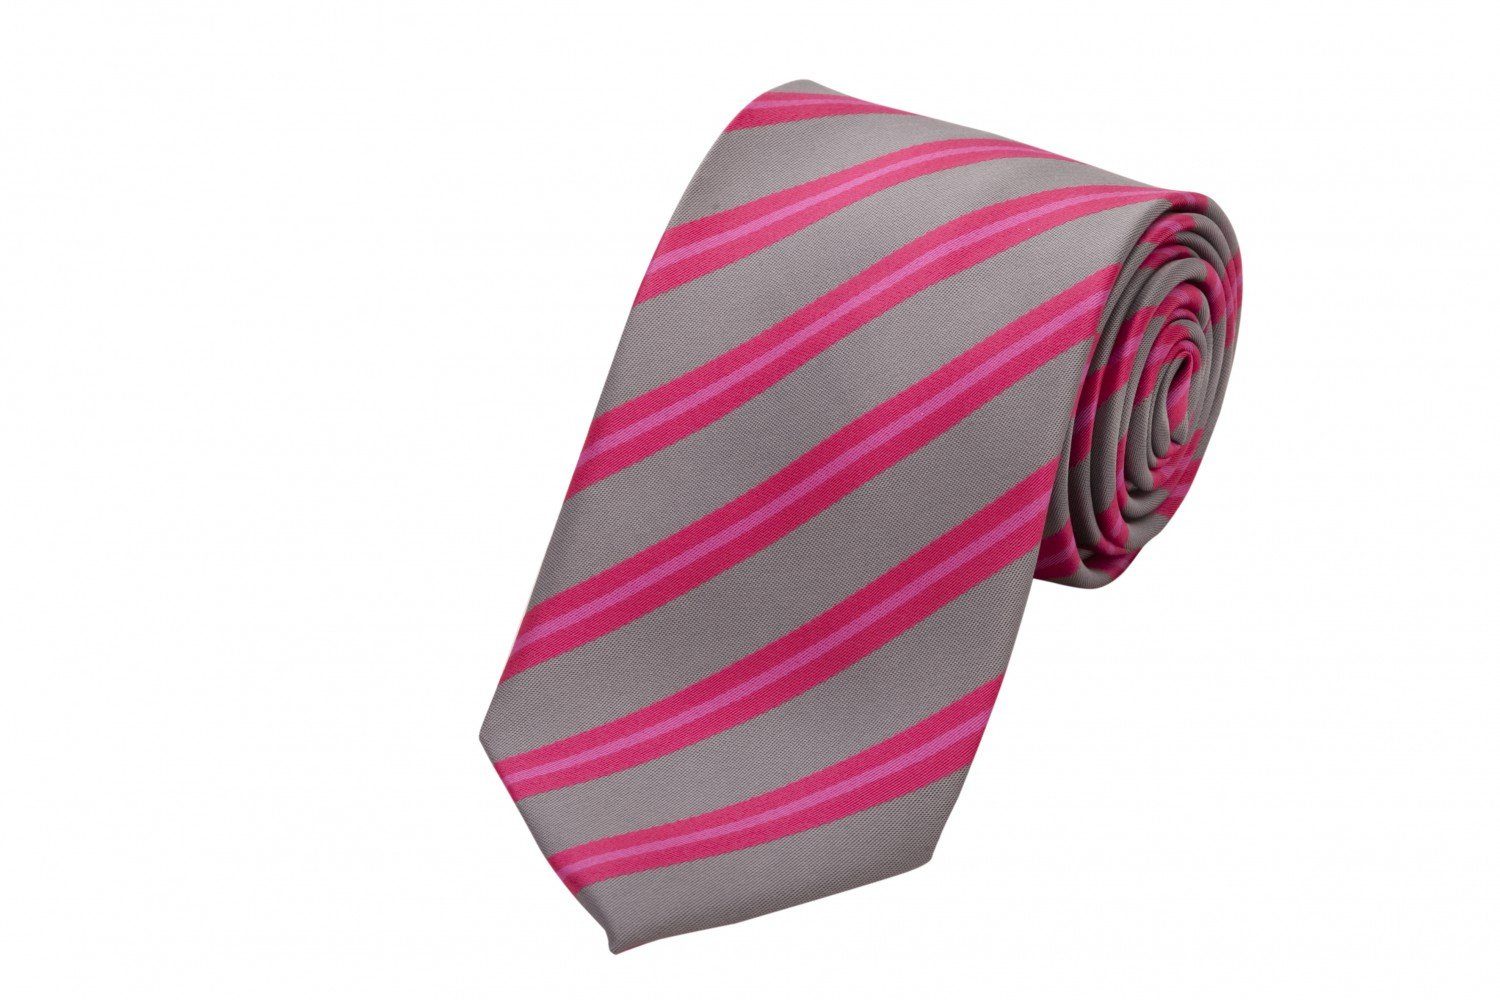 Herren Grau/Rosa Breit (ohne Streifen Krawatte mit 6cm Breite - gestreifte Tie Fabio in oder 8cm Farini Gestreift) (8cm), Krawatte Box,